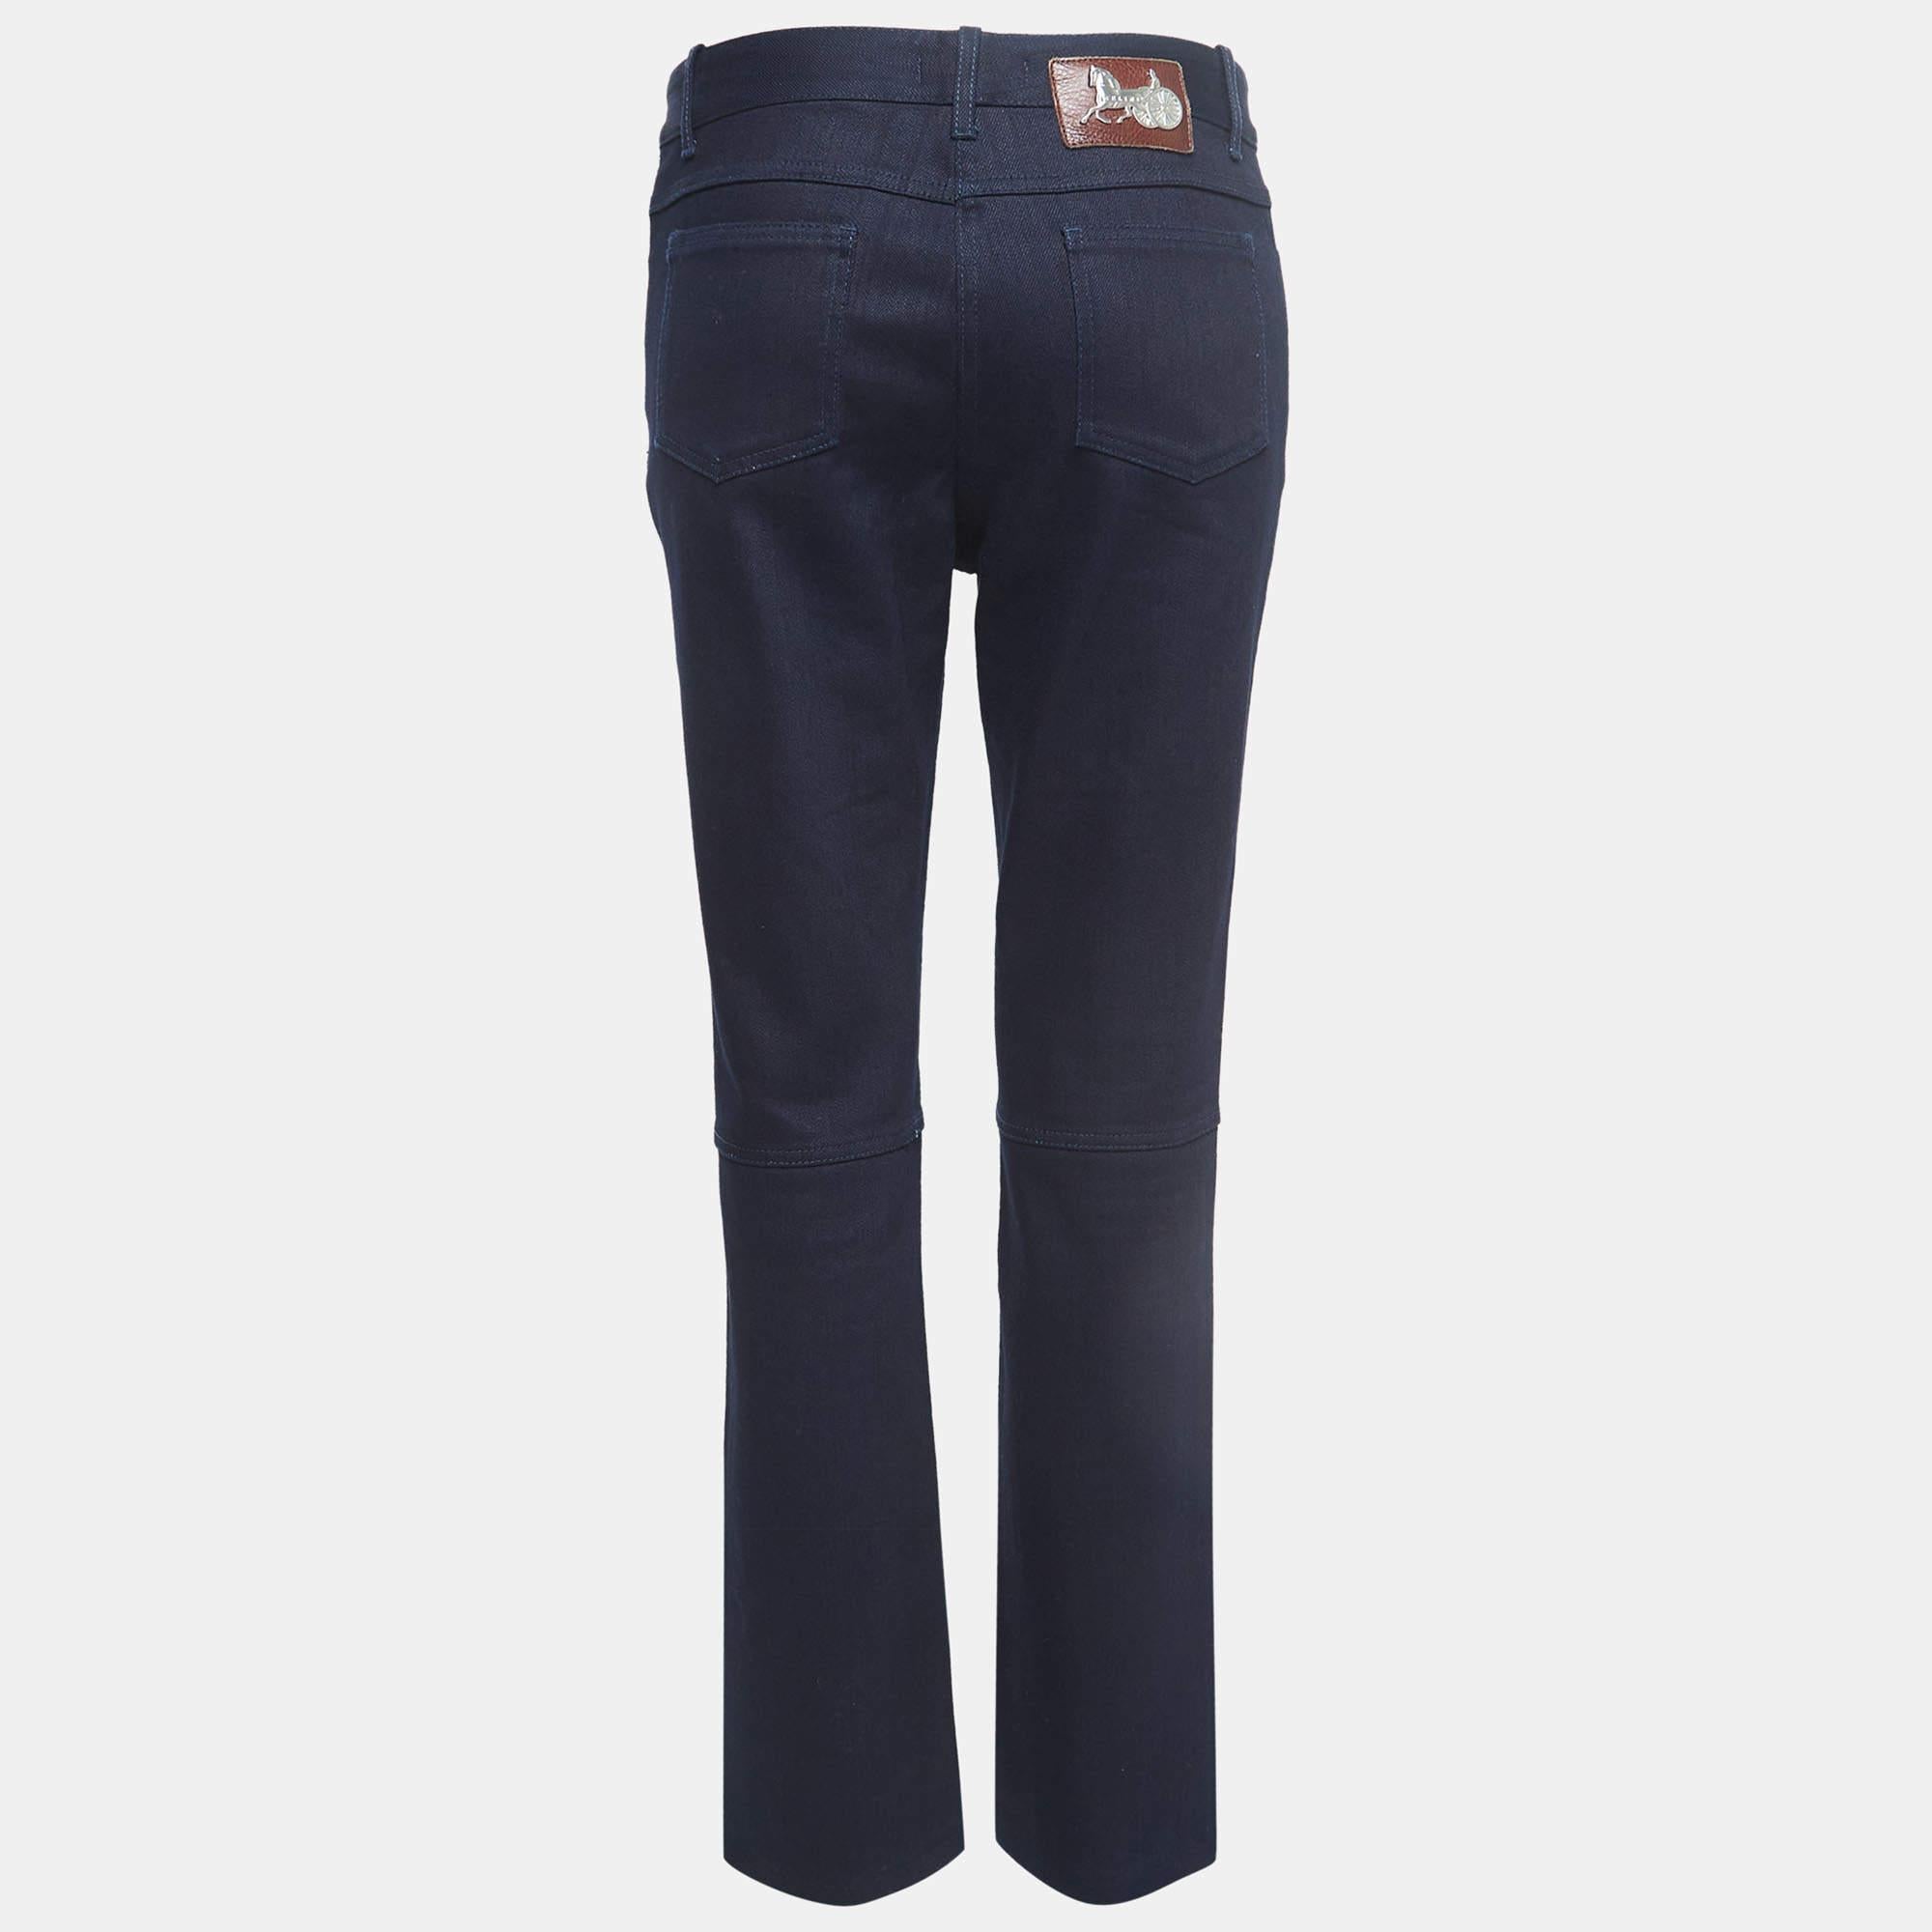 Diese Celine-Jeans ist ein unverzichtbares Kleidungsstück. Diese marineblaue Jeans kann sowohl nach oben als auch nach unten getragen werden, um entweder lässig und bequem oder schick und modisch auszusehen.

